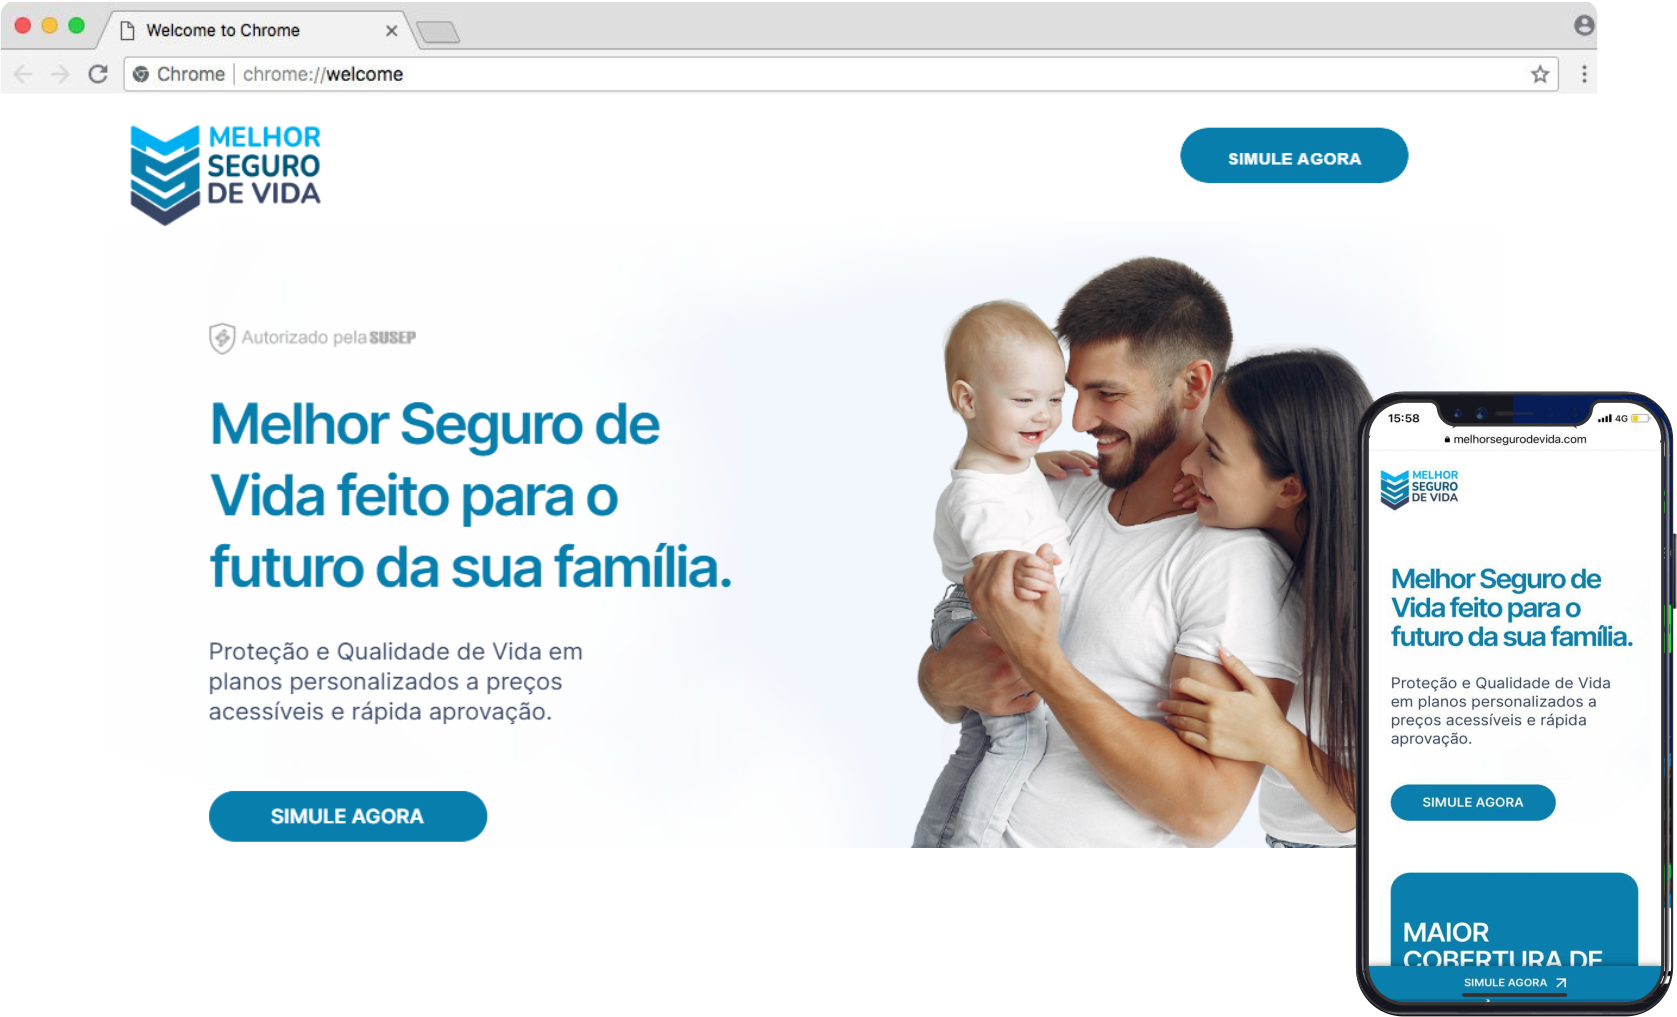 An image of the Site Melhor Seguro De Vida project.